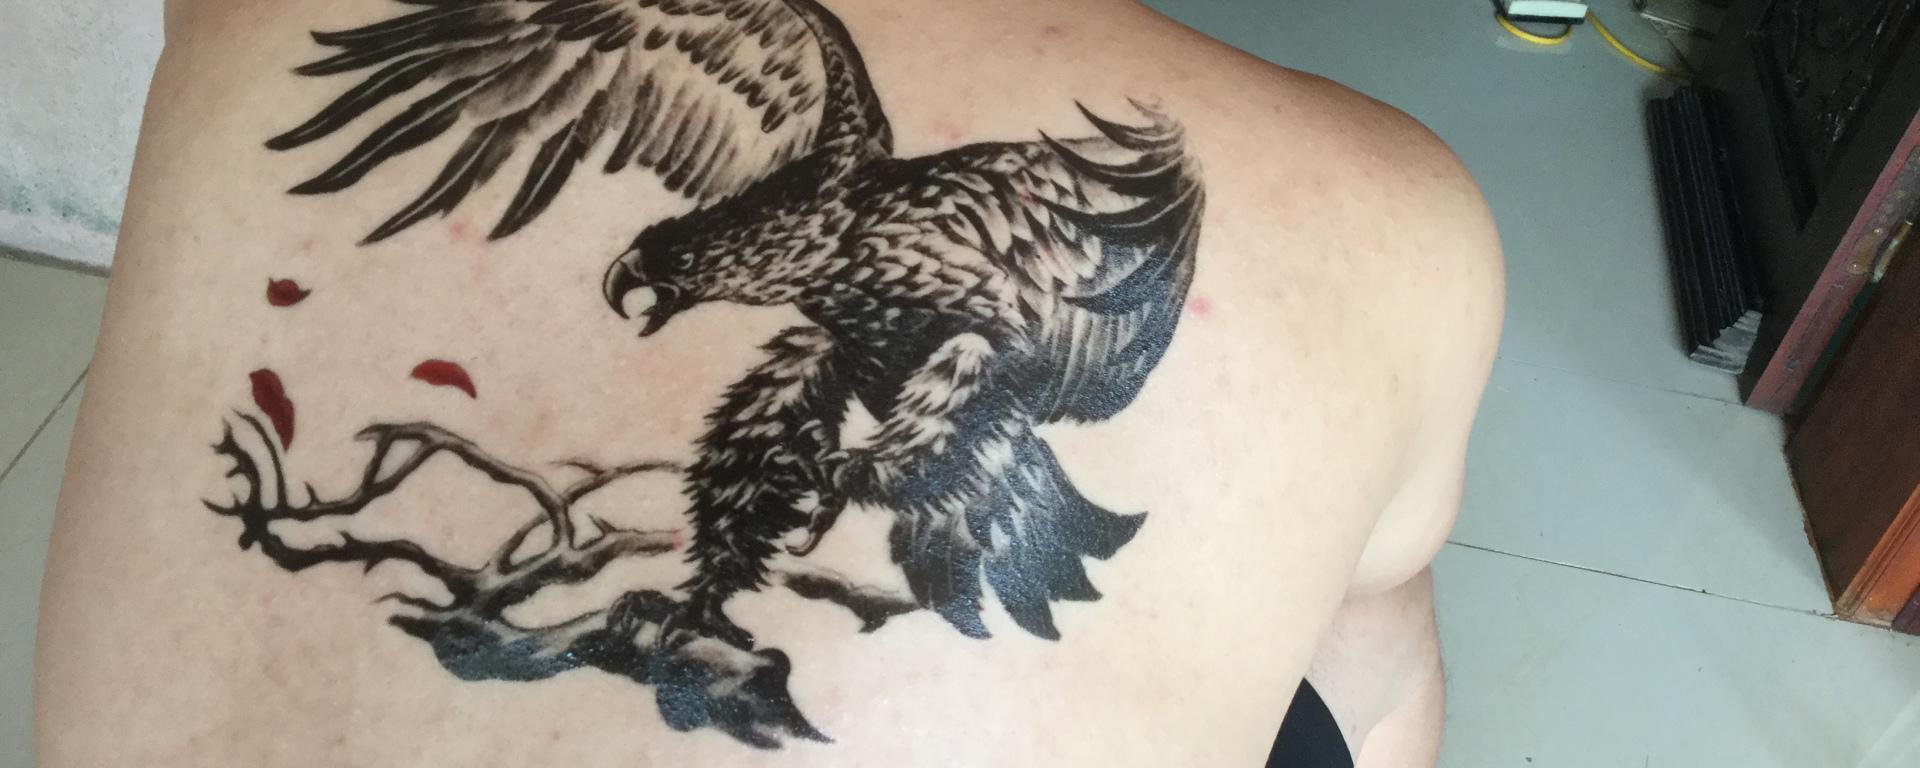 Hình Tattoo đại bàng trên lưng đẹp